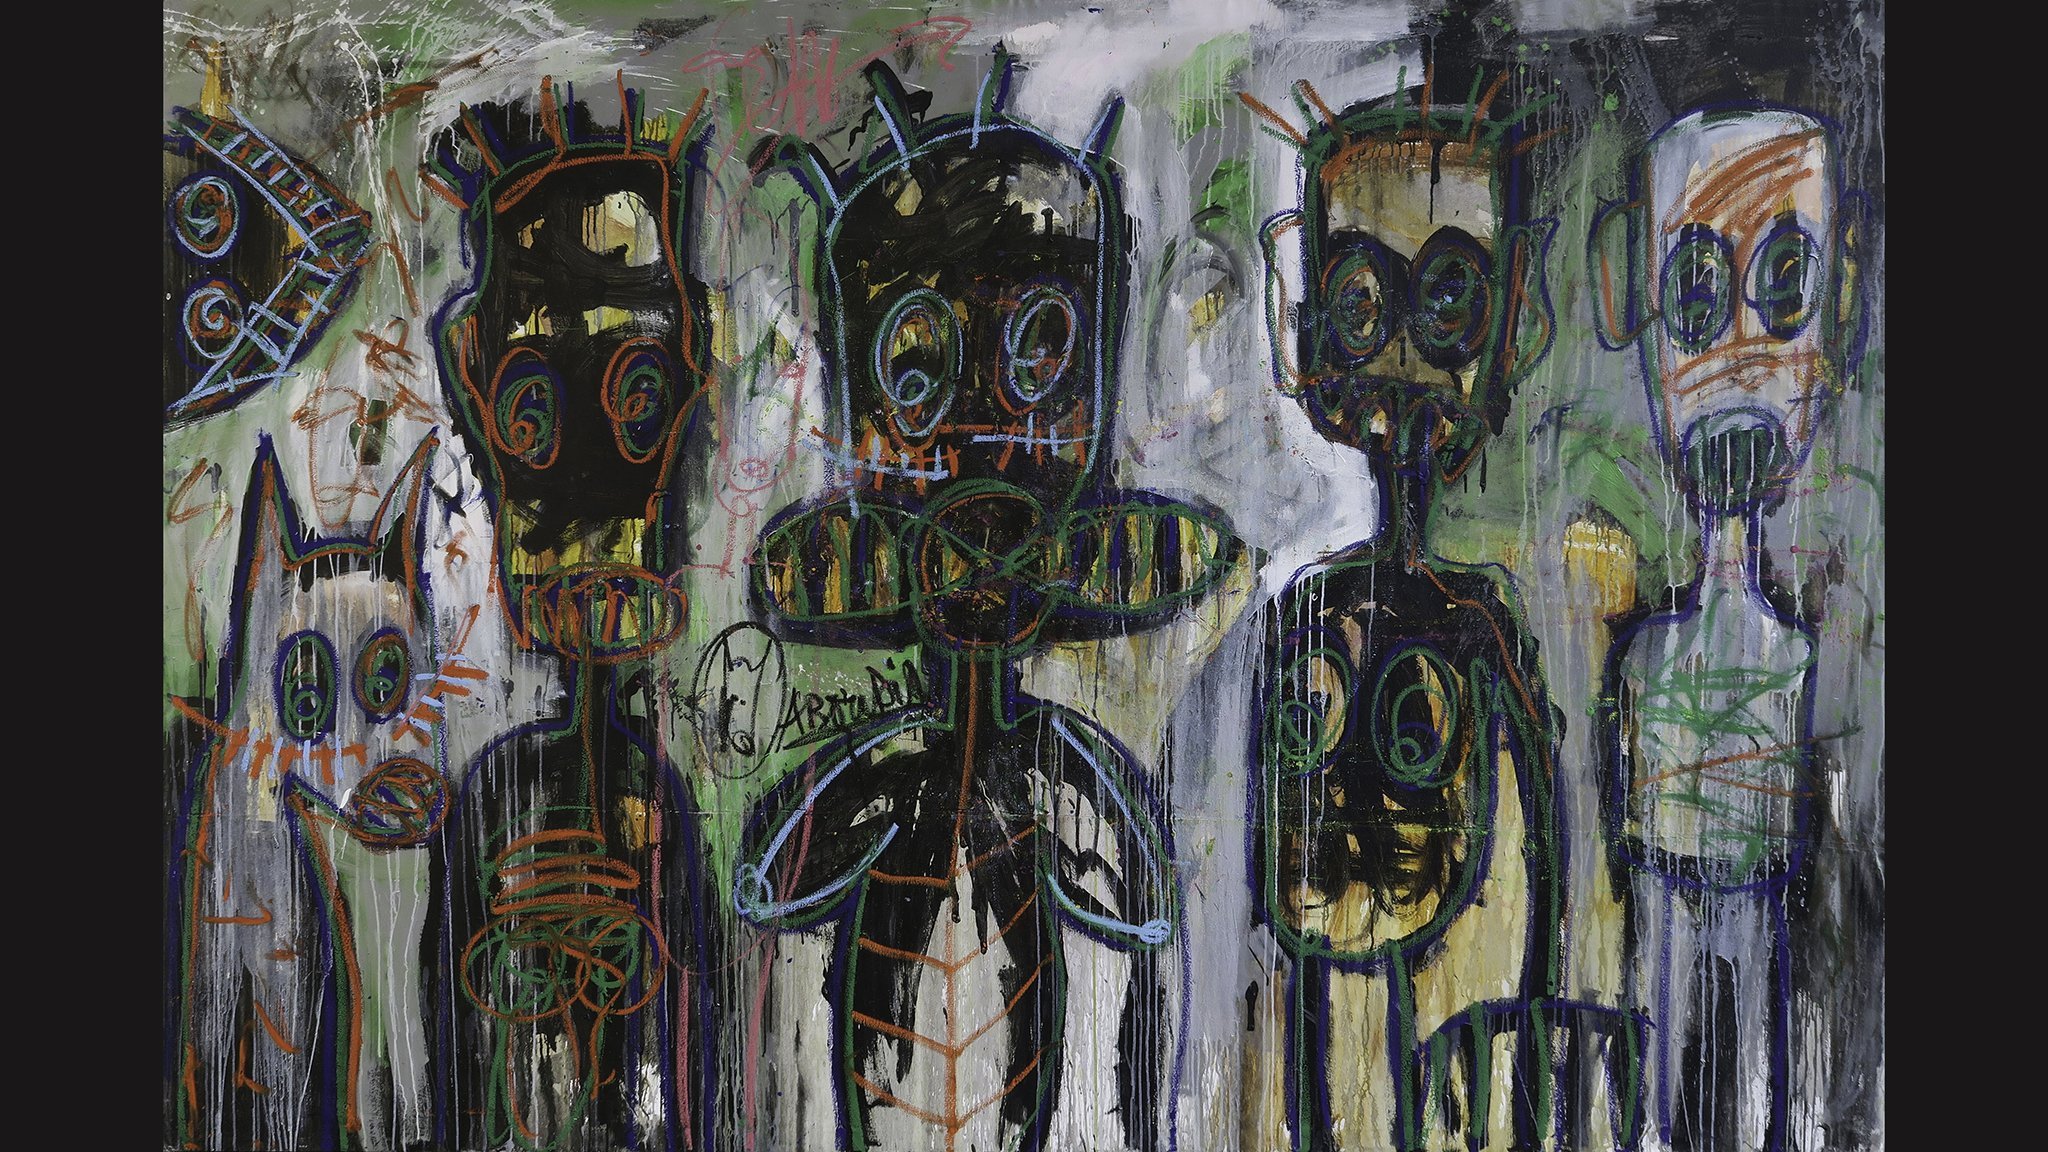 54 Contemporary African Art Fair, Somerset House, London - Contemporary African Art , HD Wallpaper & Backgrounds